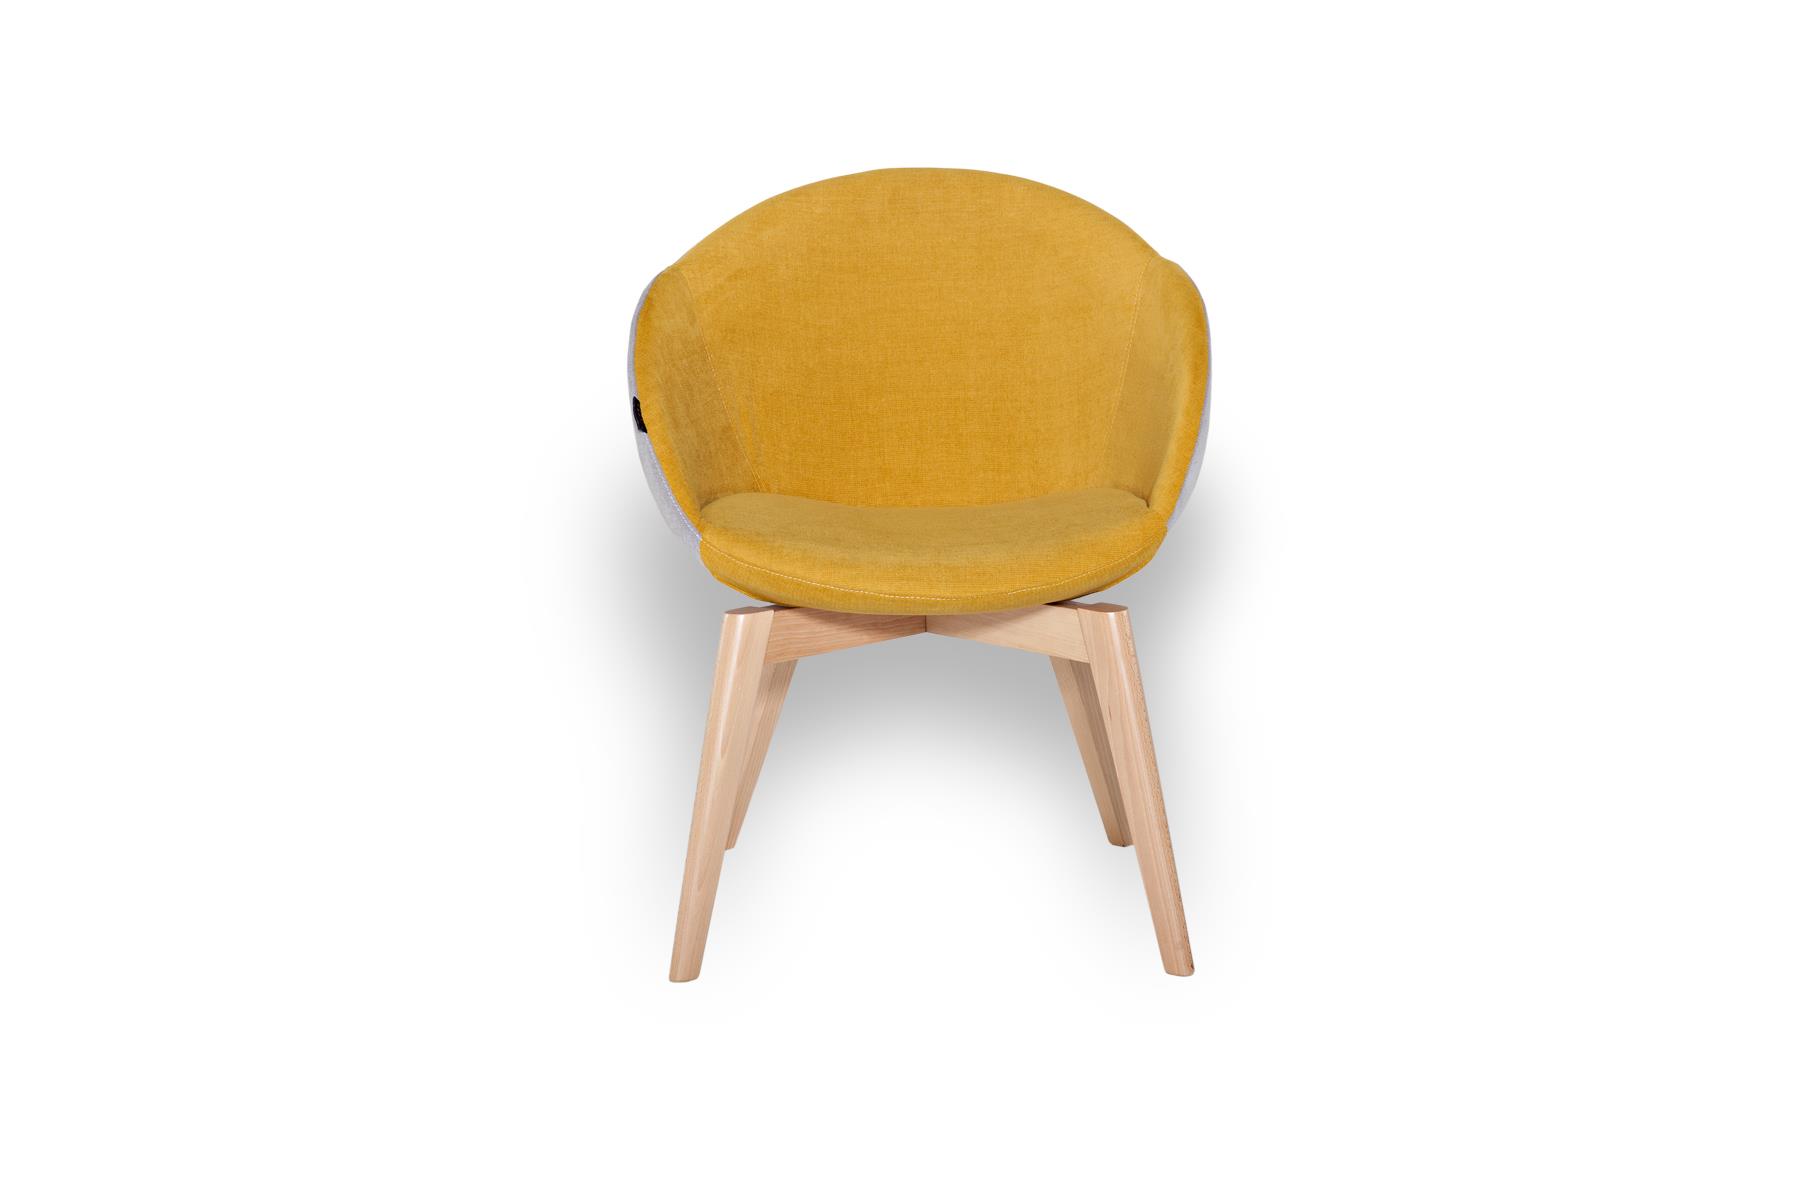 Udobnog oblika, poznatog ali prefinjenog izgleda, Clode stolica može da se koristi u različitim kontekstima, u domovima, kancelarijama, ugostiteljskim objektima...